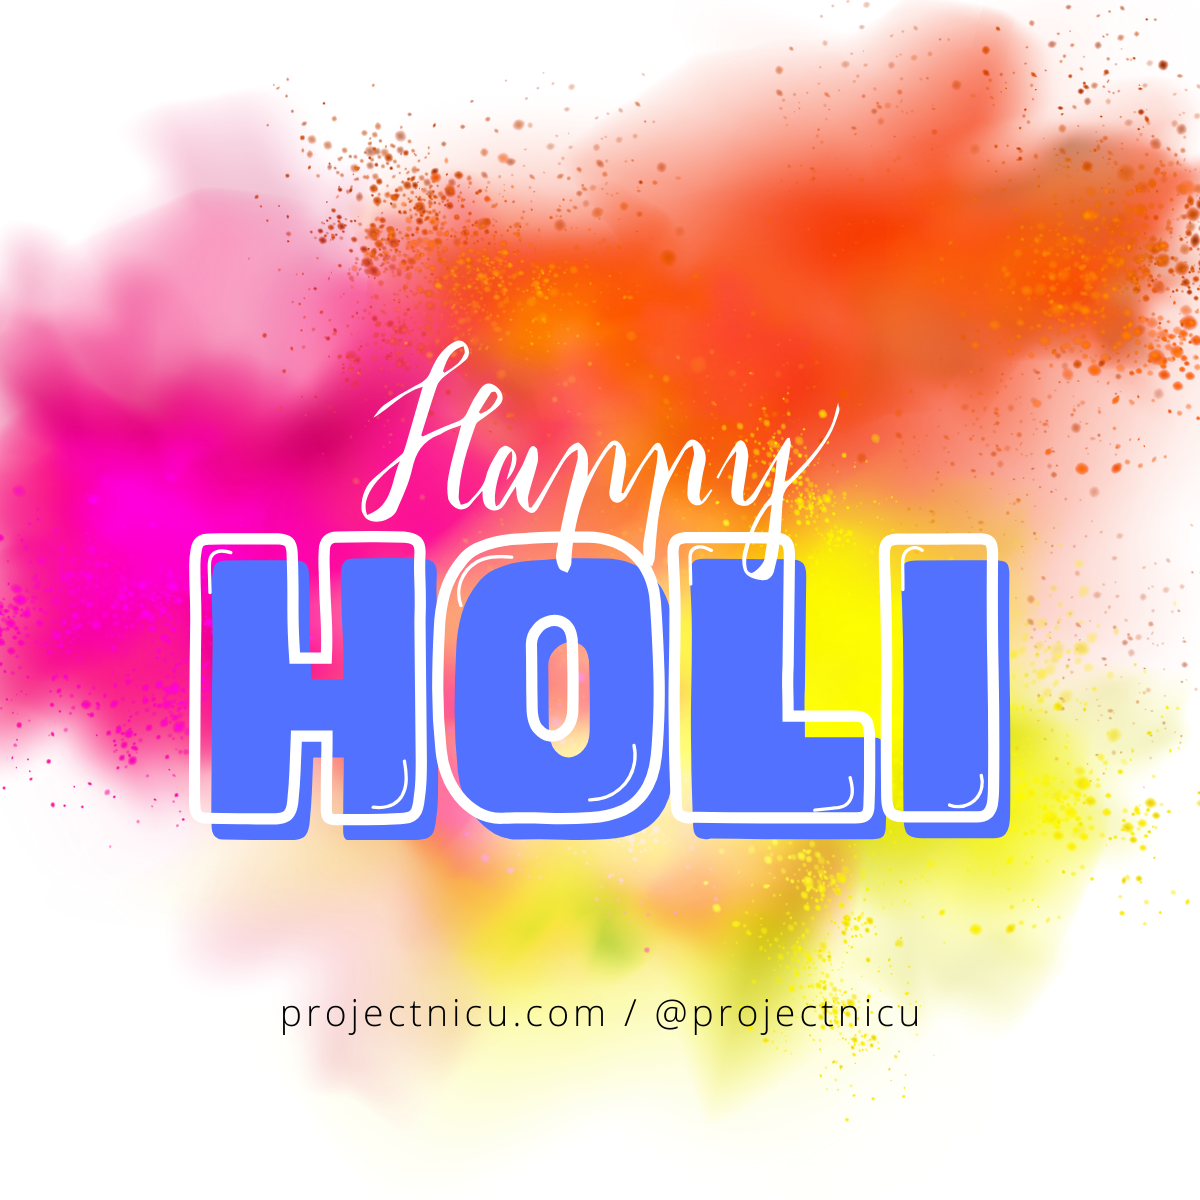 Happy Holi.png